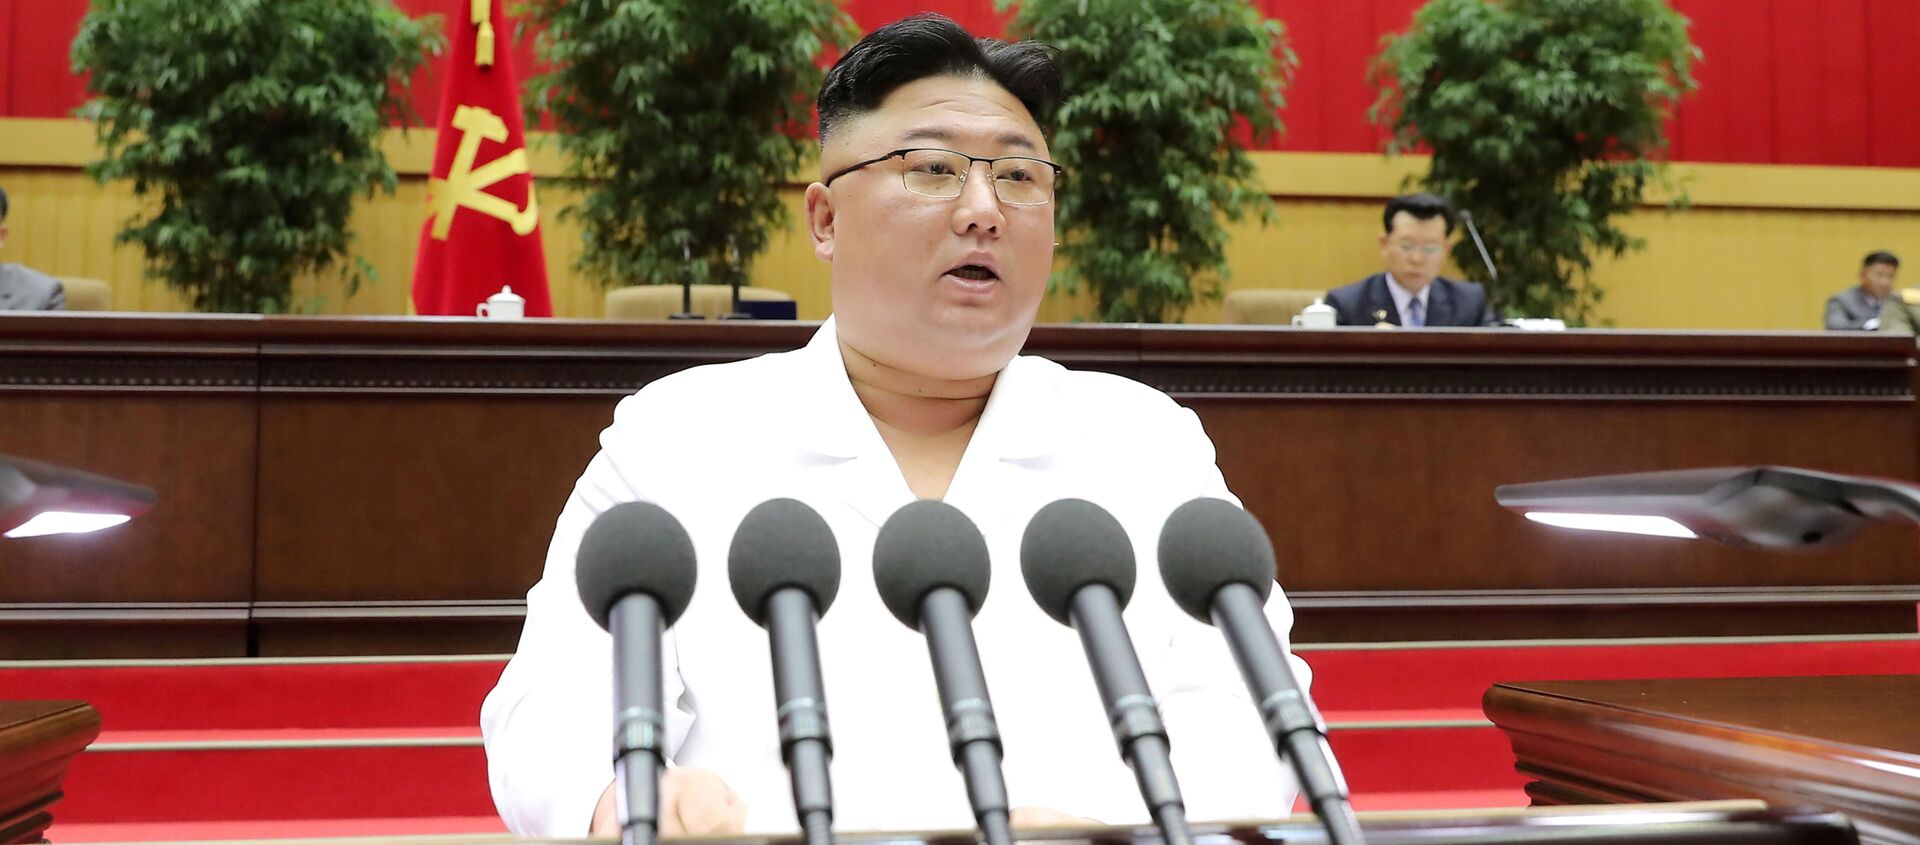 Nhà lãnh đạo Triều Tiên Kim Jong Un phát biểu trước hội nghị các bí thư chi bộ của Đảng Công nhân cầm quyền ở Bình Nhưỡng, trong bức ảnh không ghi ngày tháng được hãng thông tấn trung ương Triều Tiên (KCNA) công bố ngày 7/4/2021. - Sputnik Việt Nam, 1920, 27.05.2021